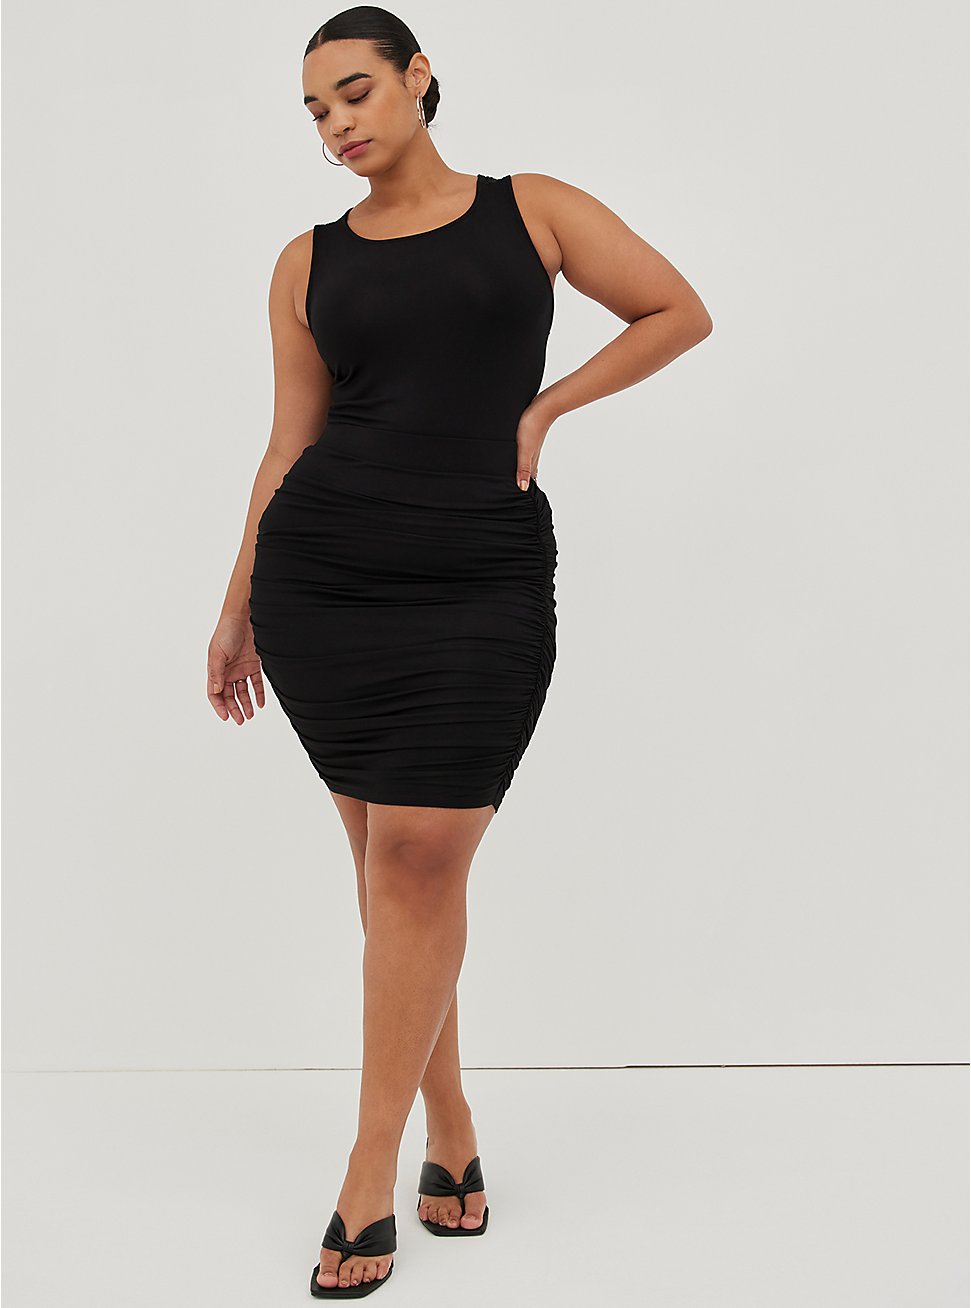 Cinched Mini Skirt - Super Soft Black, DEEP BLACK, hi-res